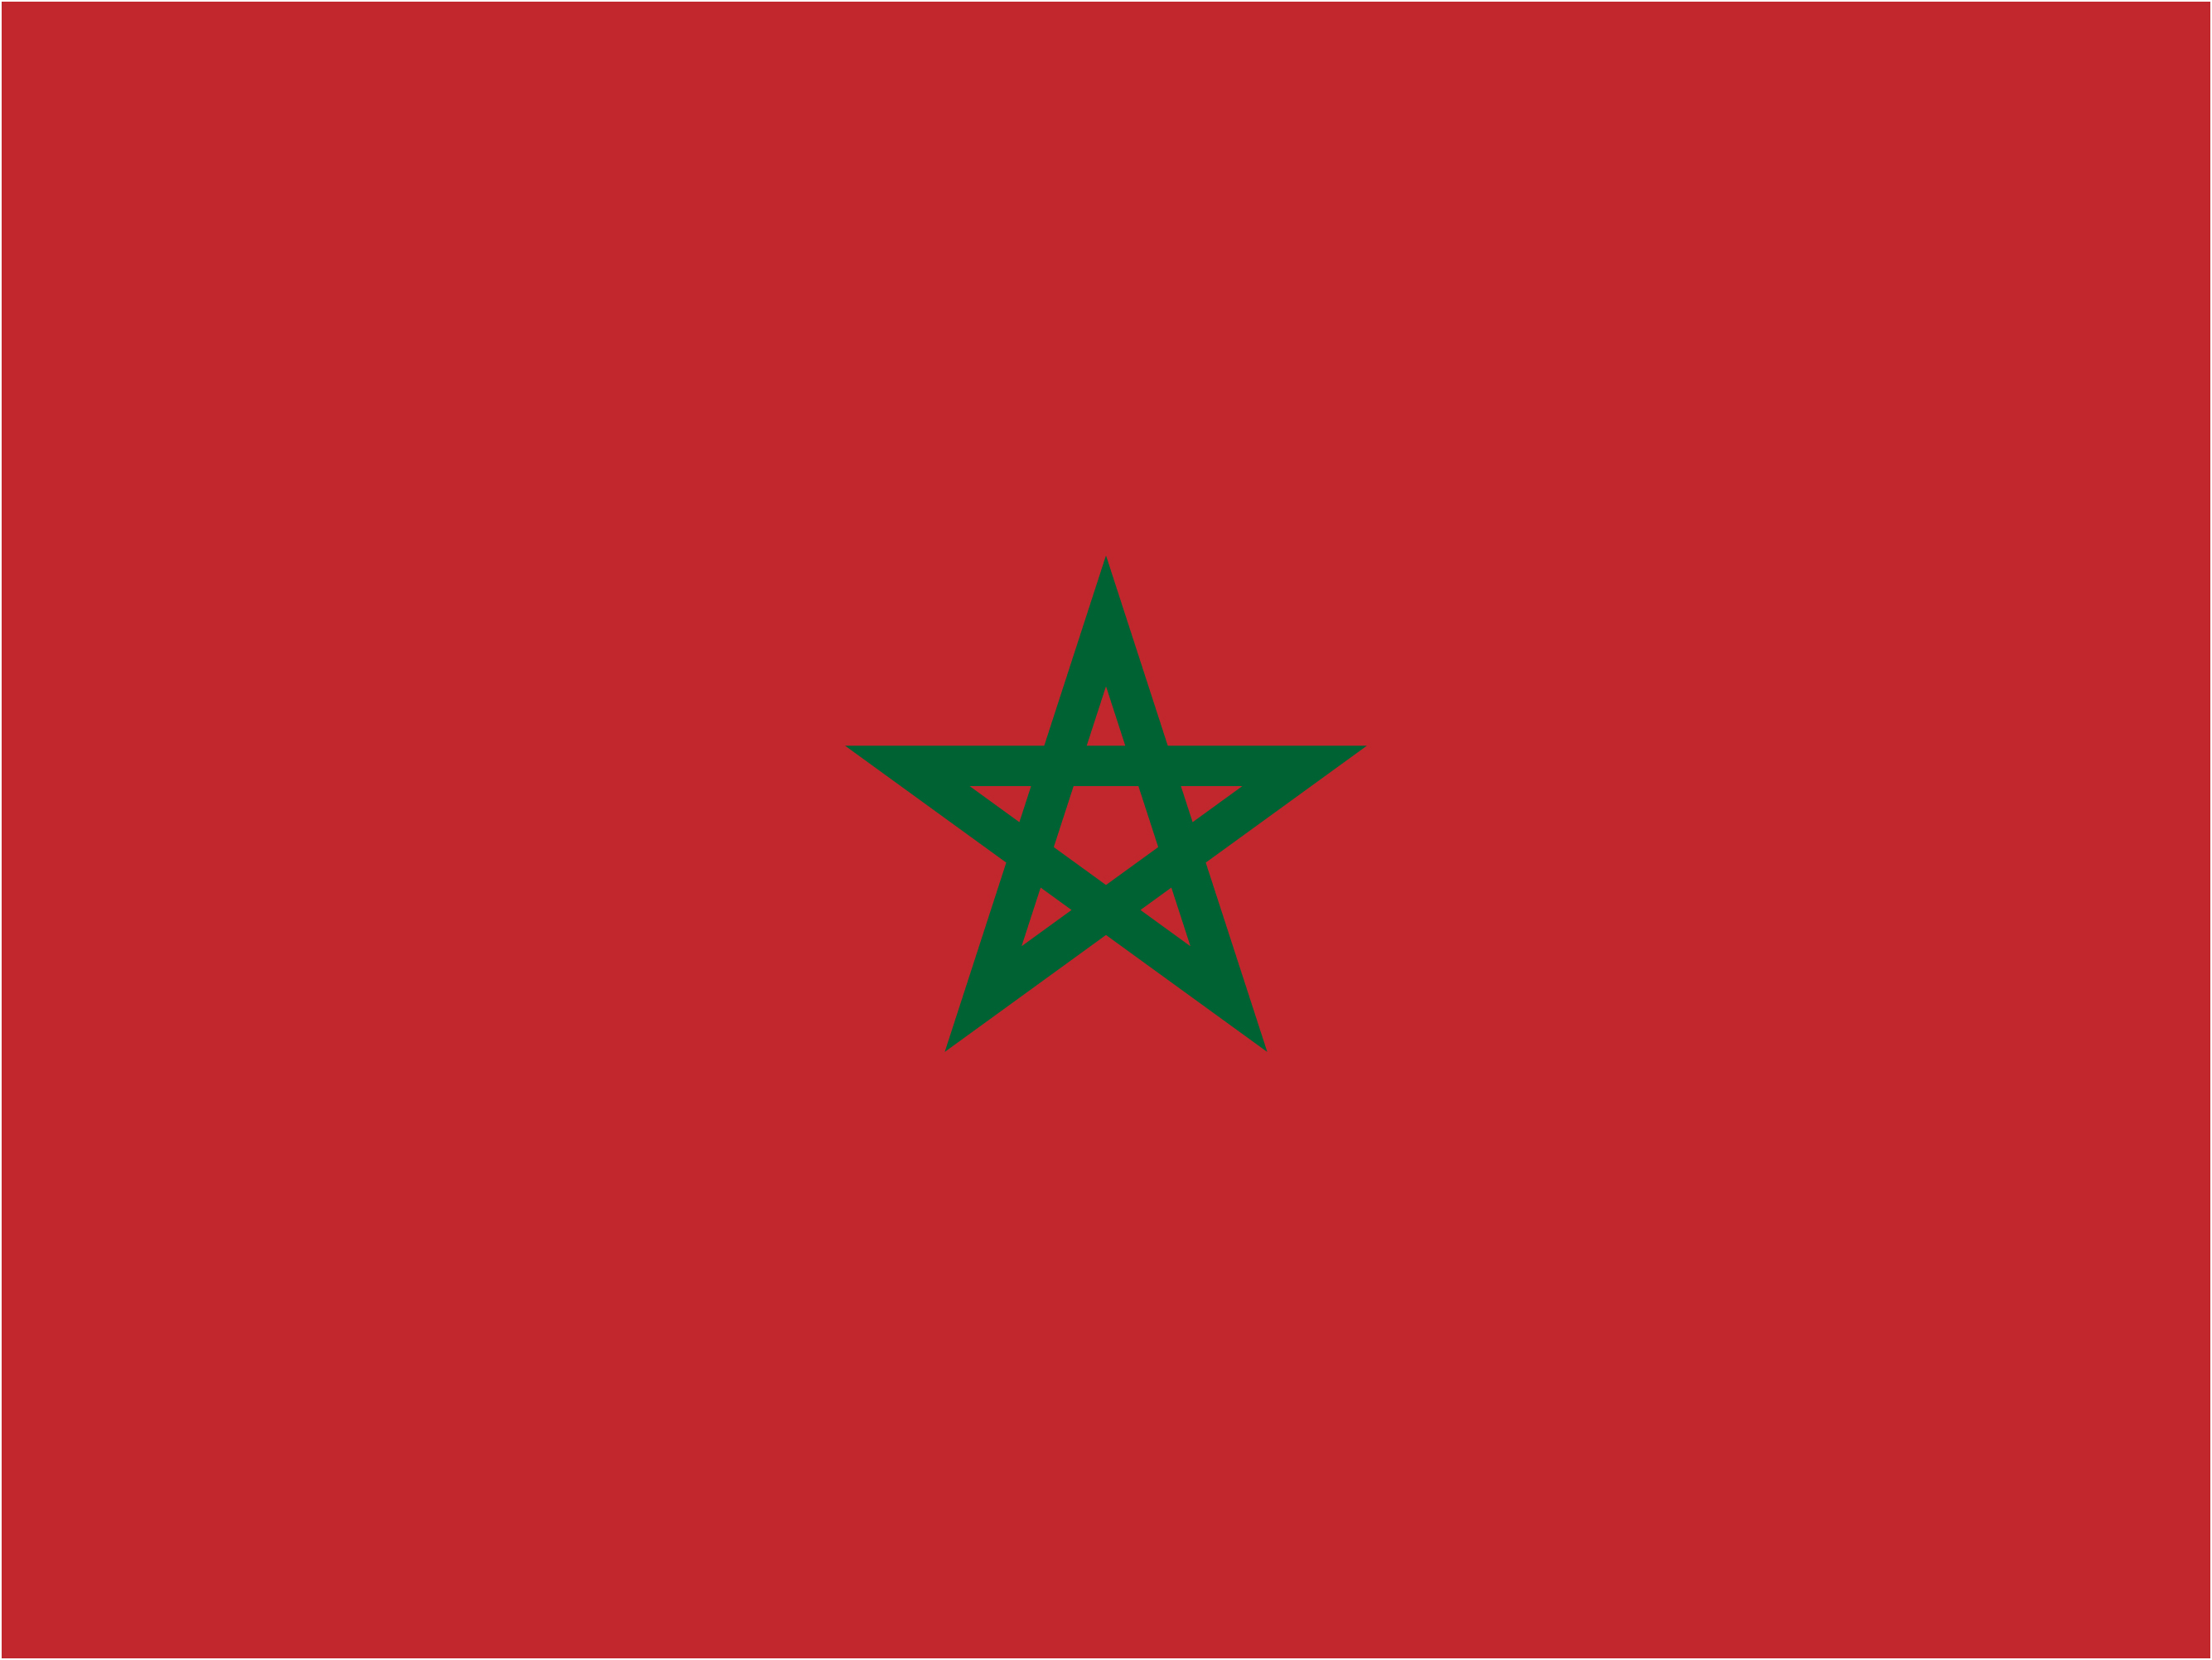 Marokko vlag